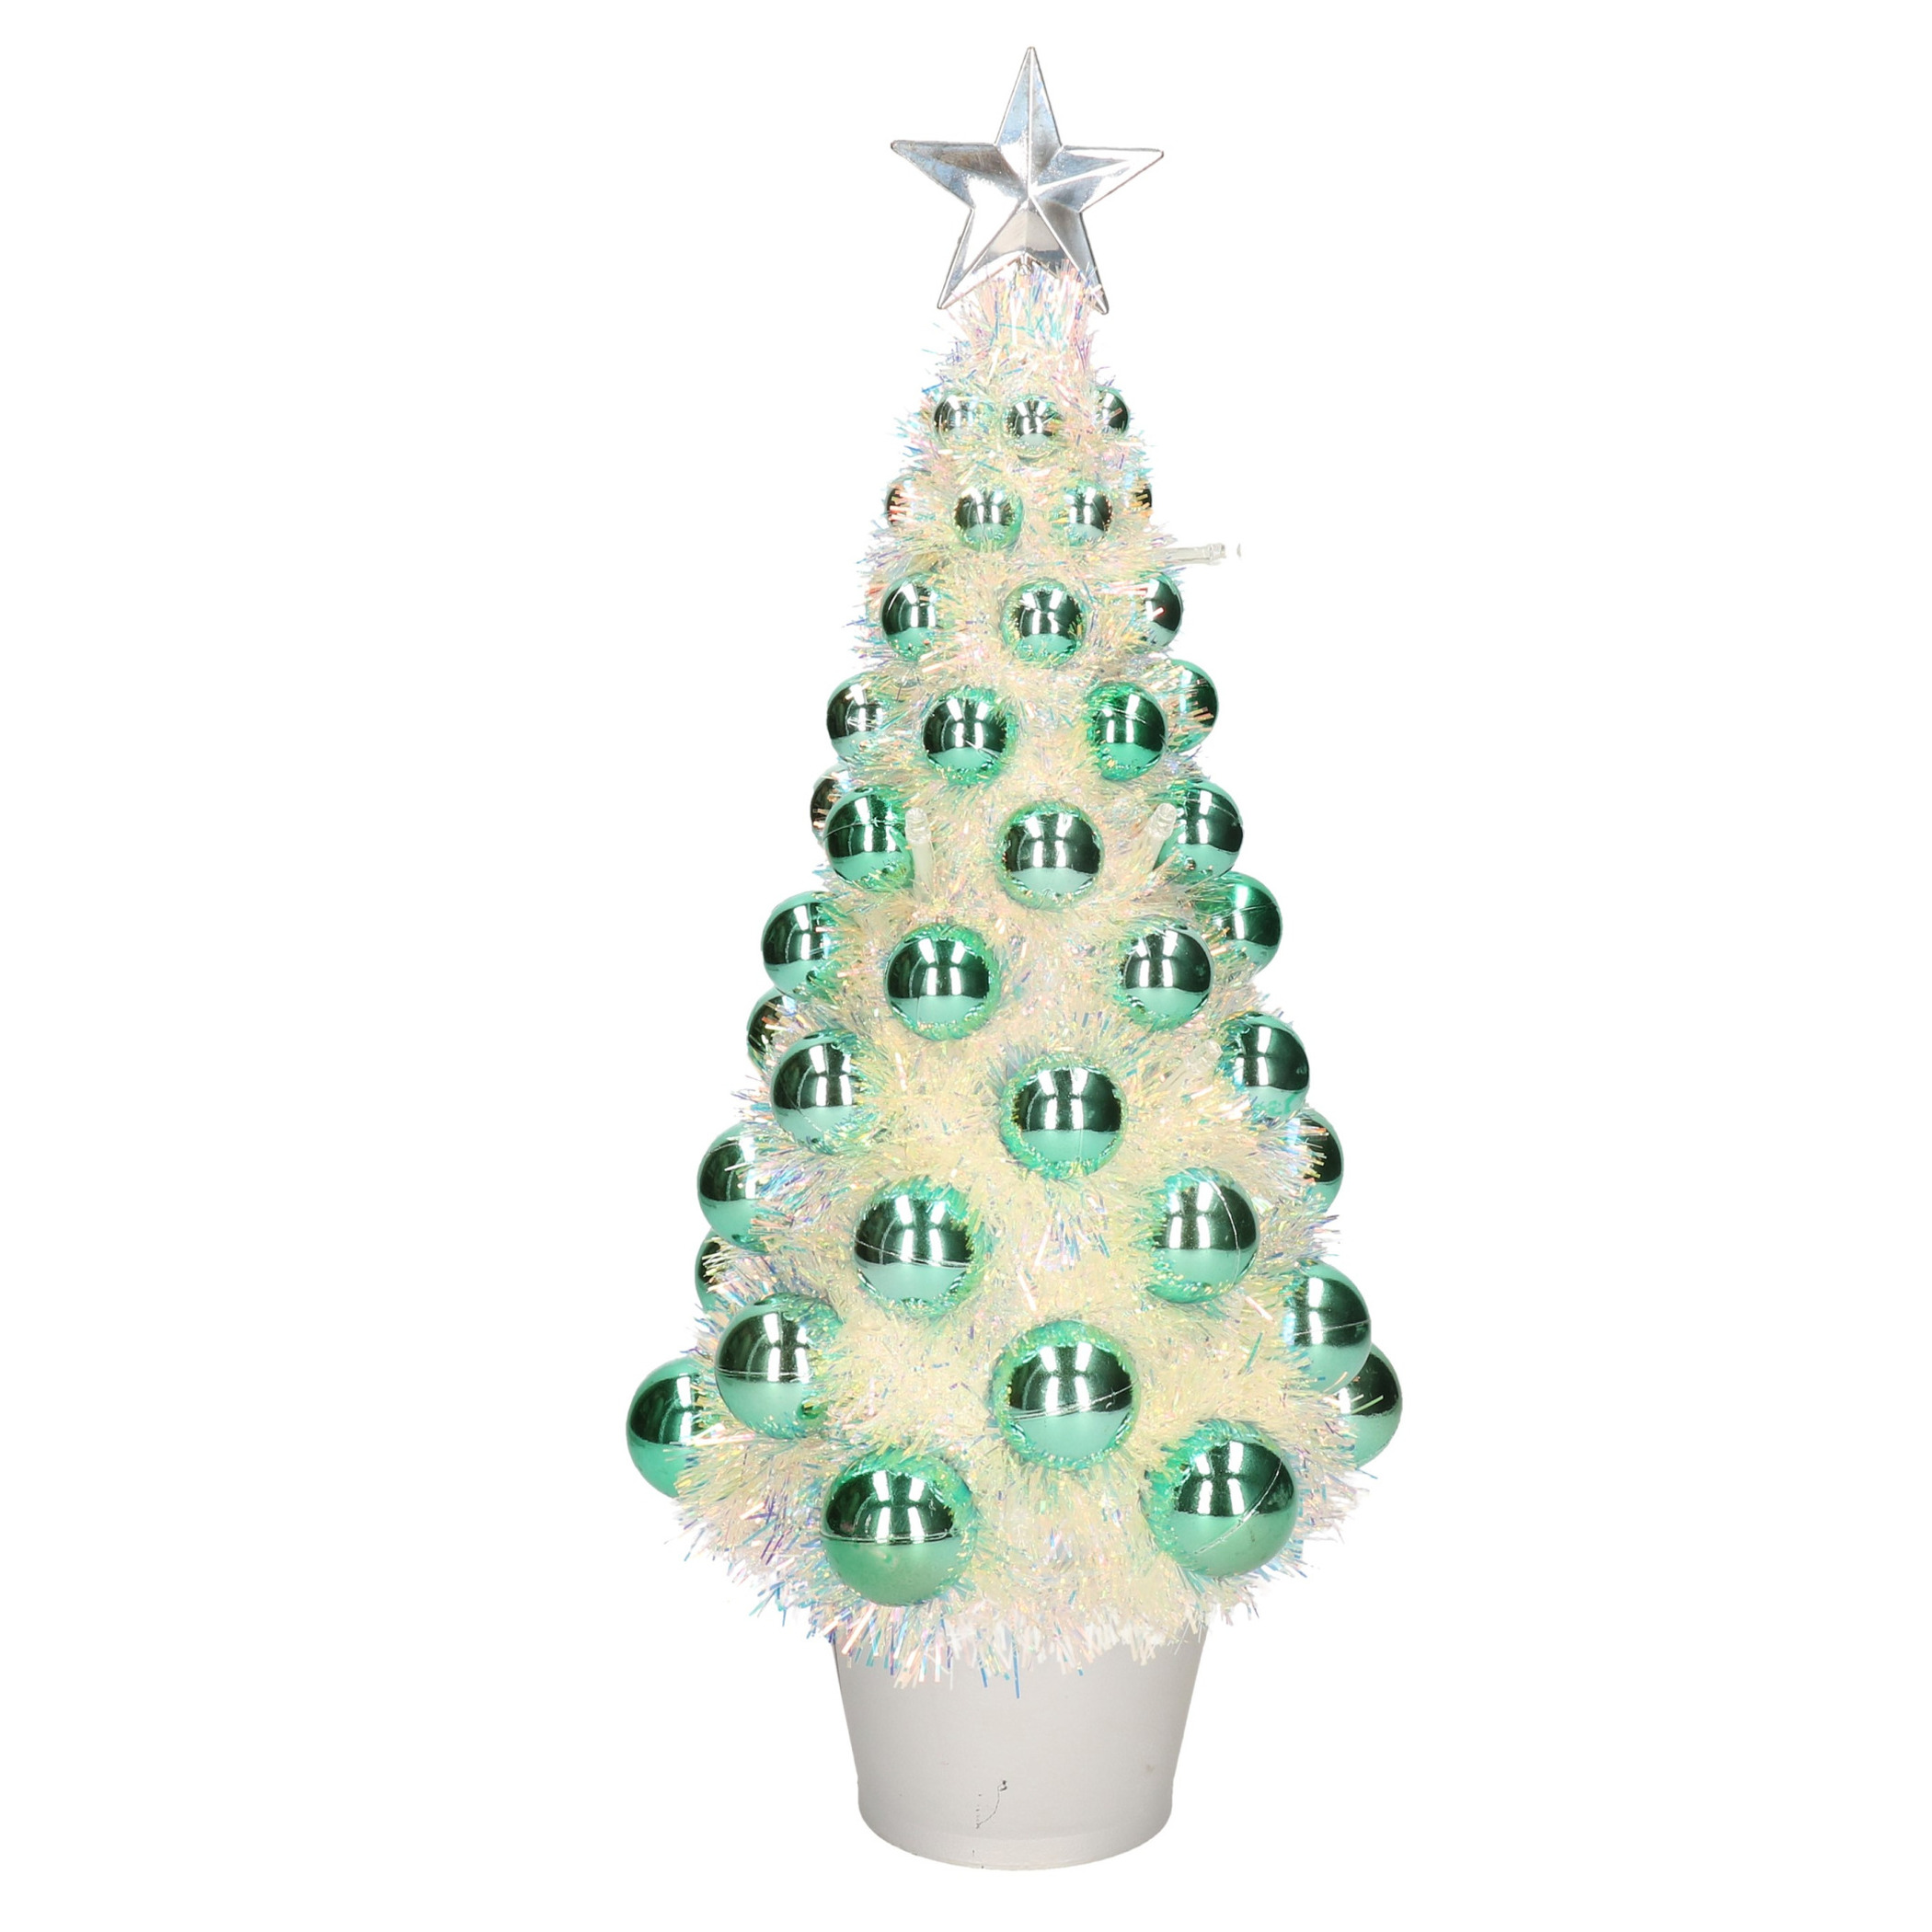 Complete mini kunst kerstboom-kunstboom groen met lichtjes 40 cm